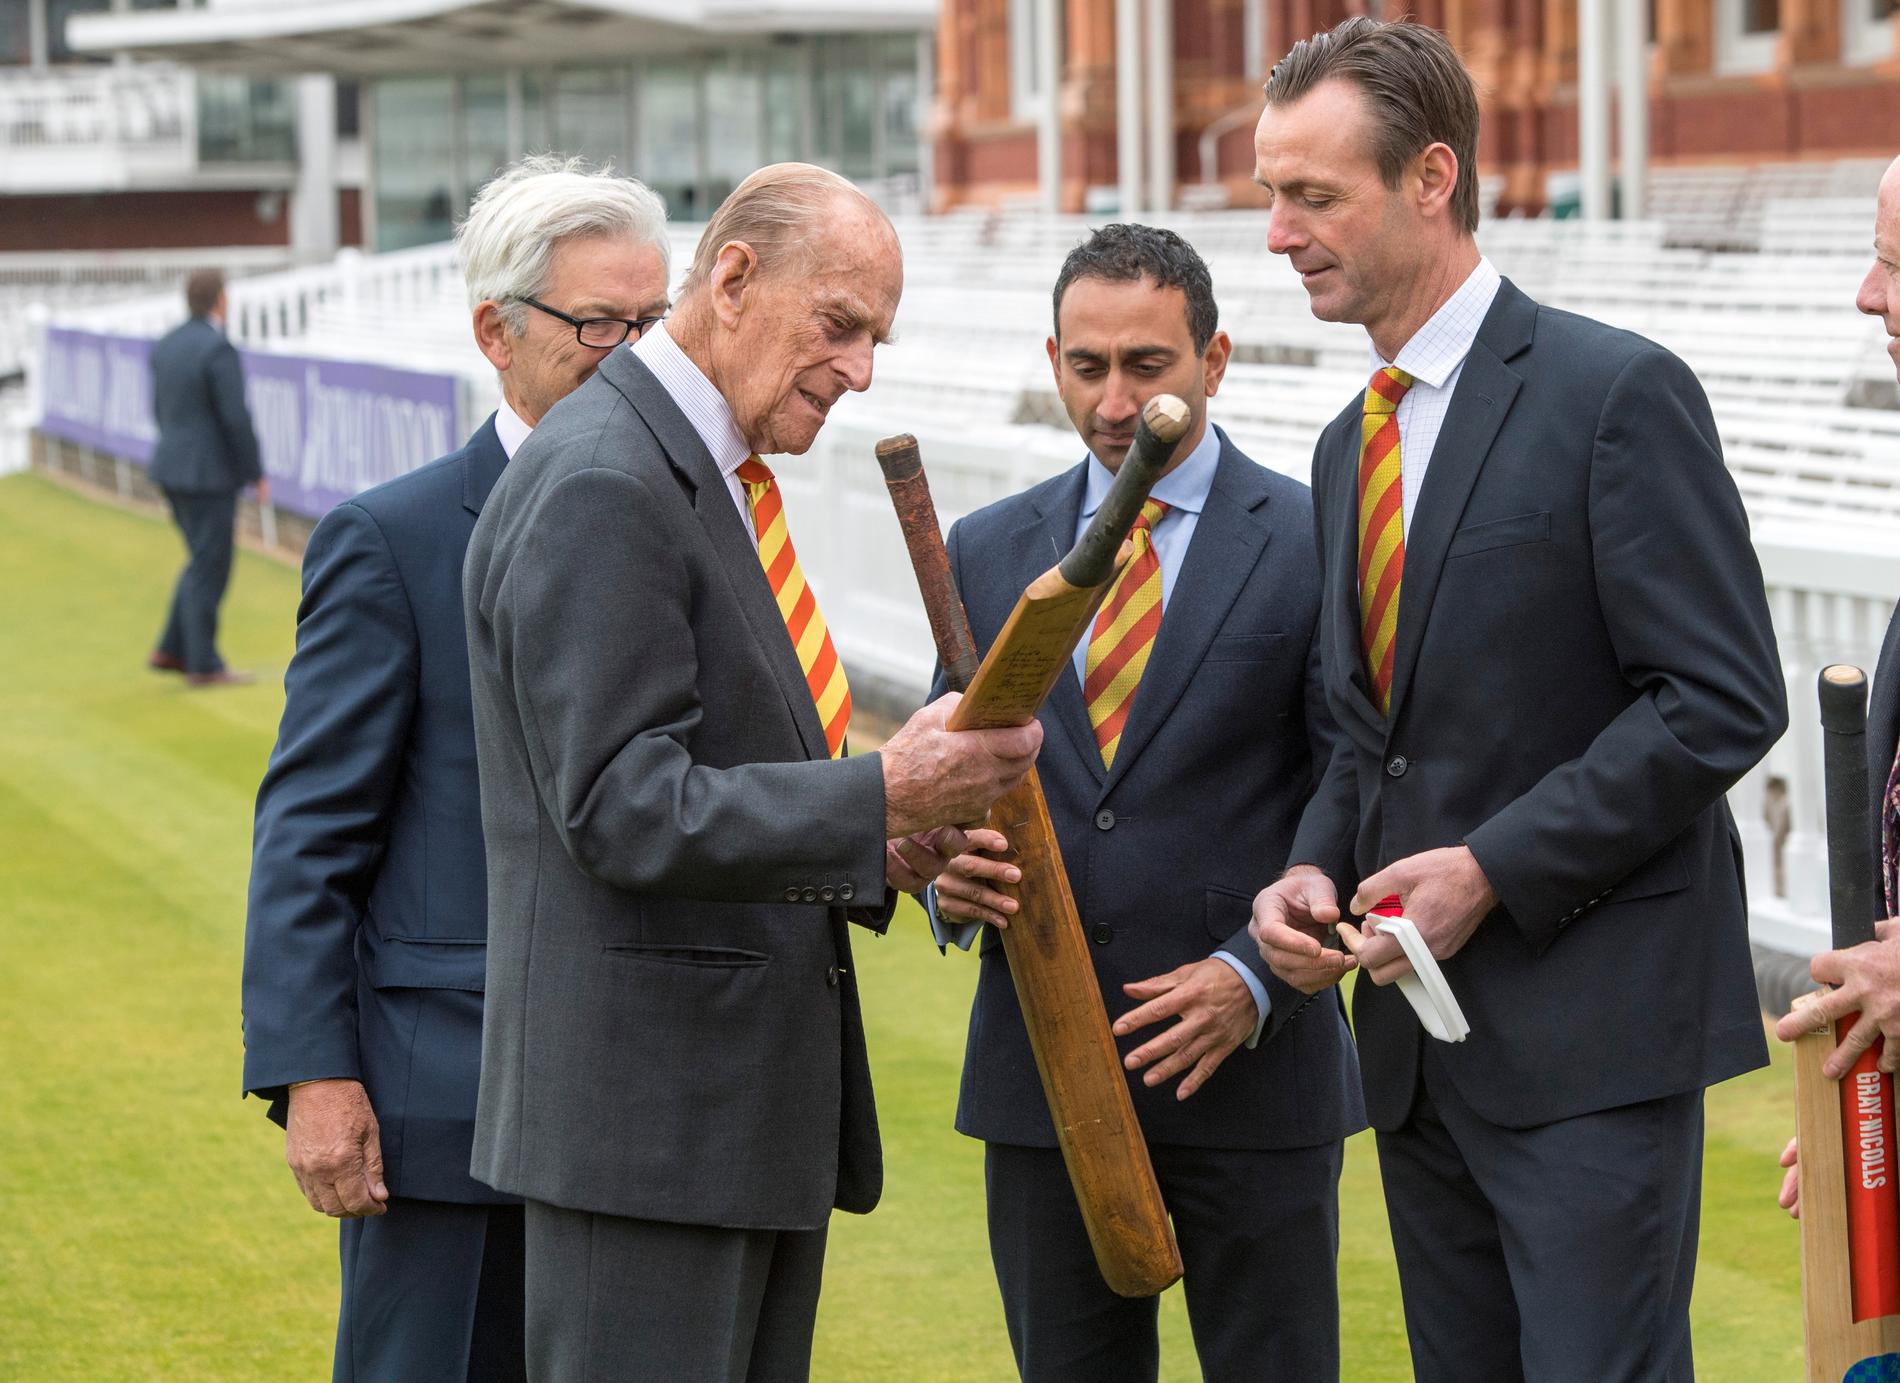 Prins Philip klippte band och representerade vid Lord's Cricket Ground på onsdagen.